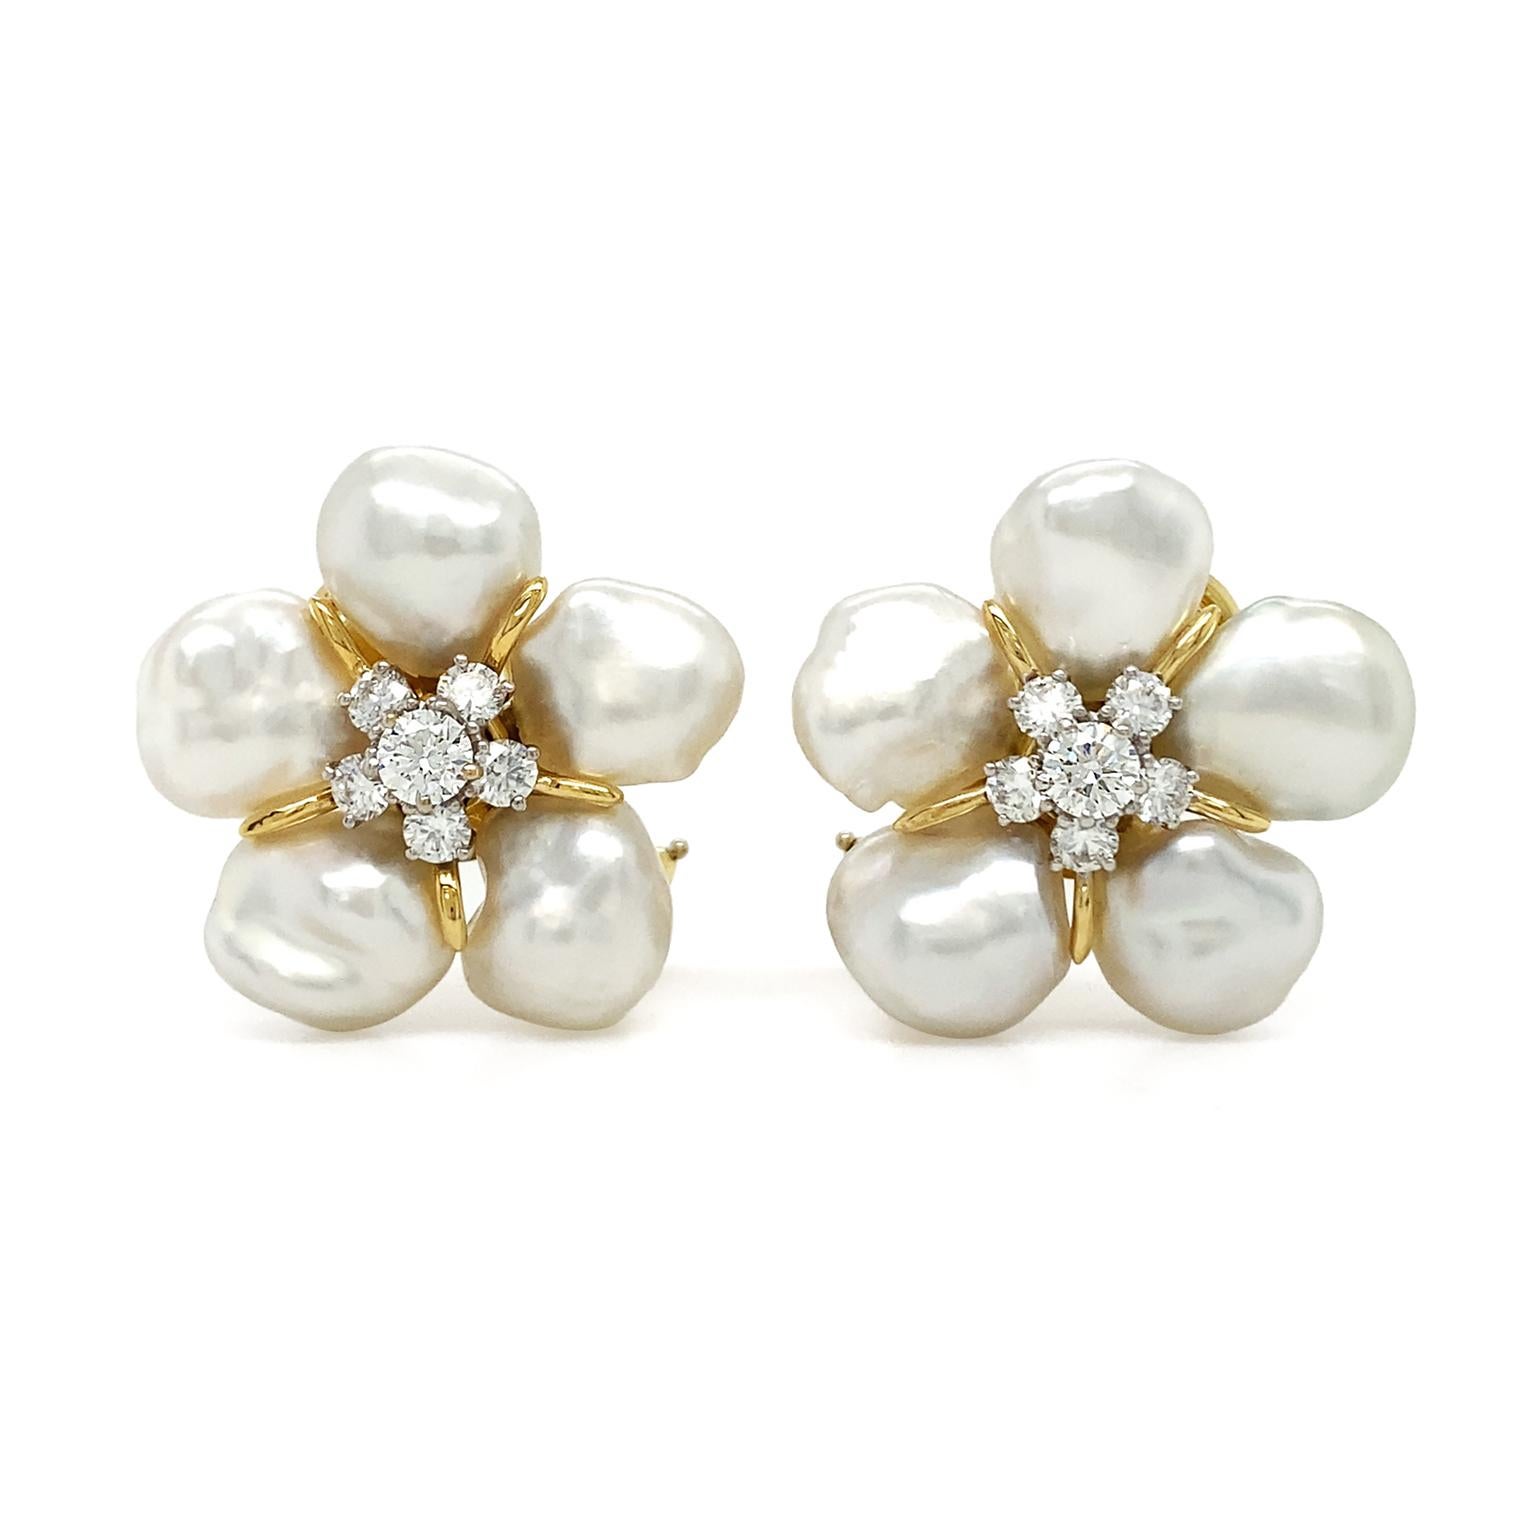 Botanische Motive werden durch Perlen und Diamanten visualisiert. Fünf Südsee-Keshi-Perlen, die für ihre einzigartige Kreation und ihren Perlmuttkörper geschätzt werden, sind in einem Kreis angeordnet. Die Fassungen aus 18 Karat Gelbgold lassen